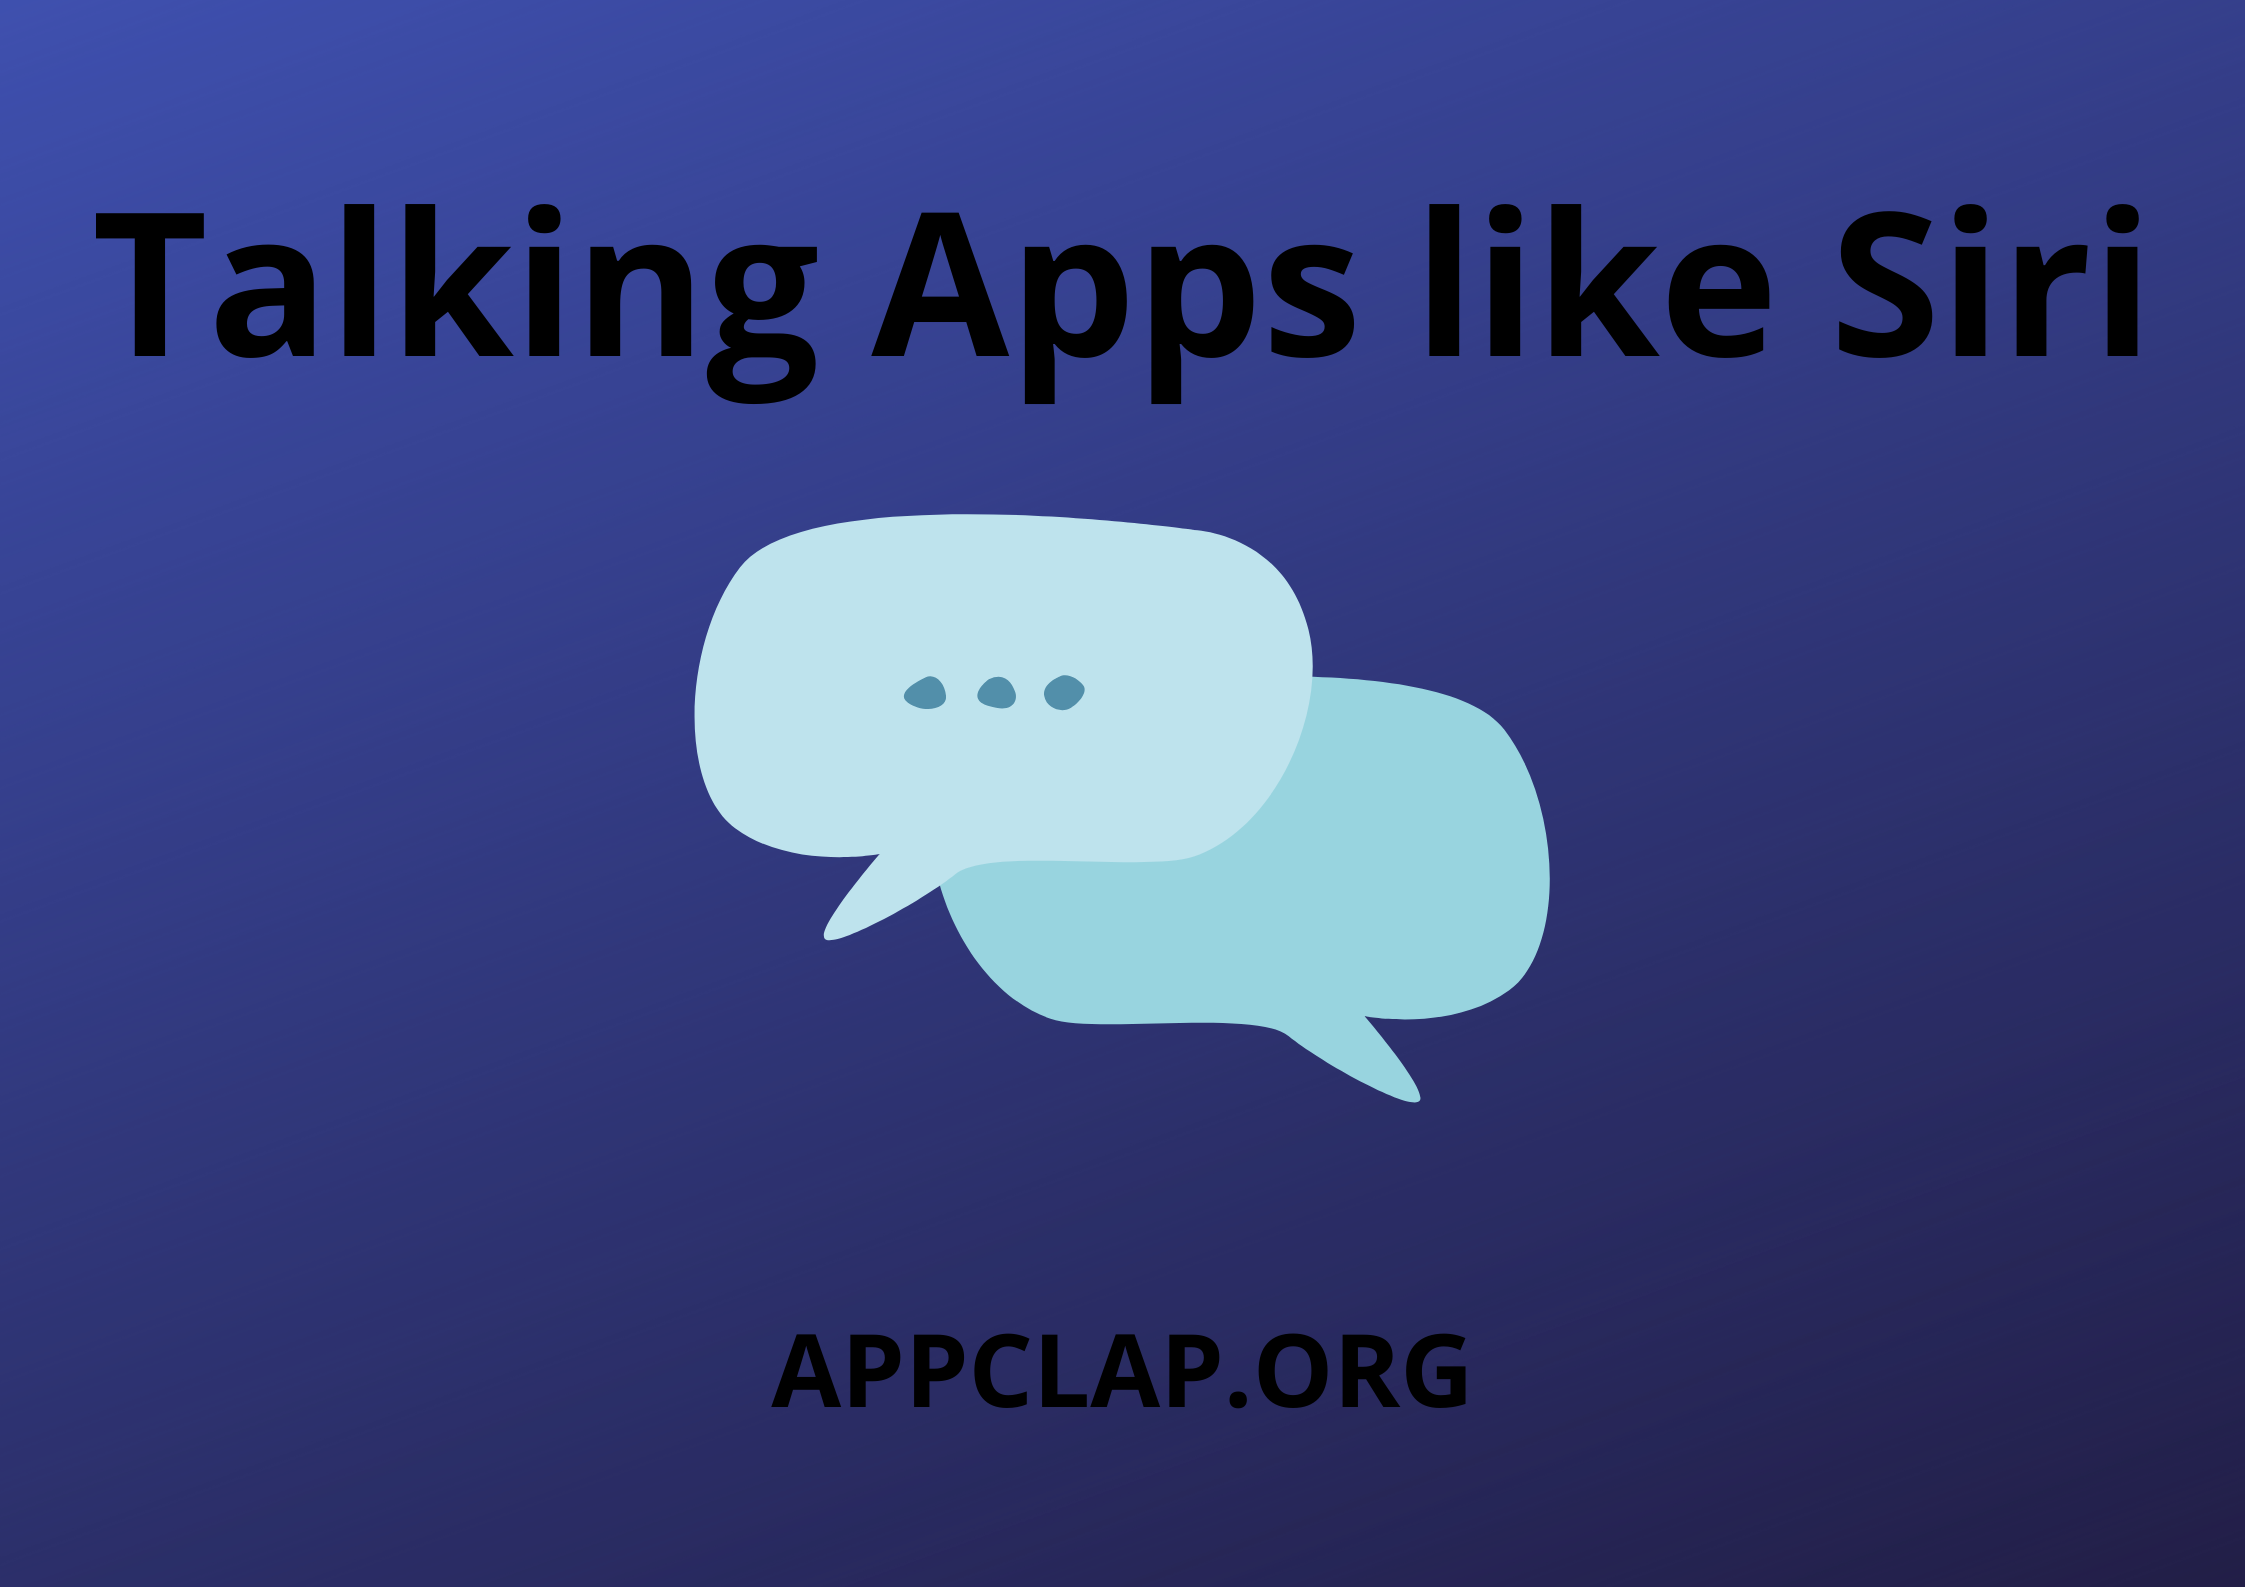 Talking Apps like Siri